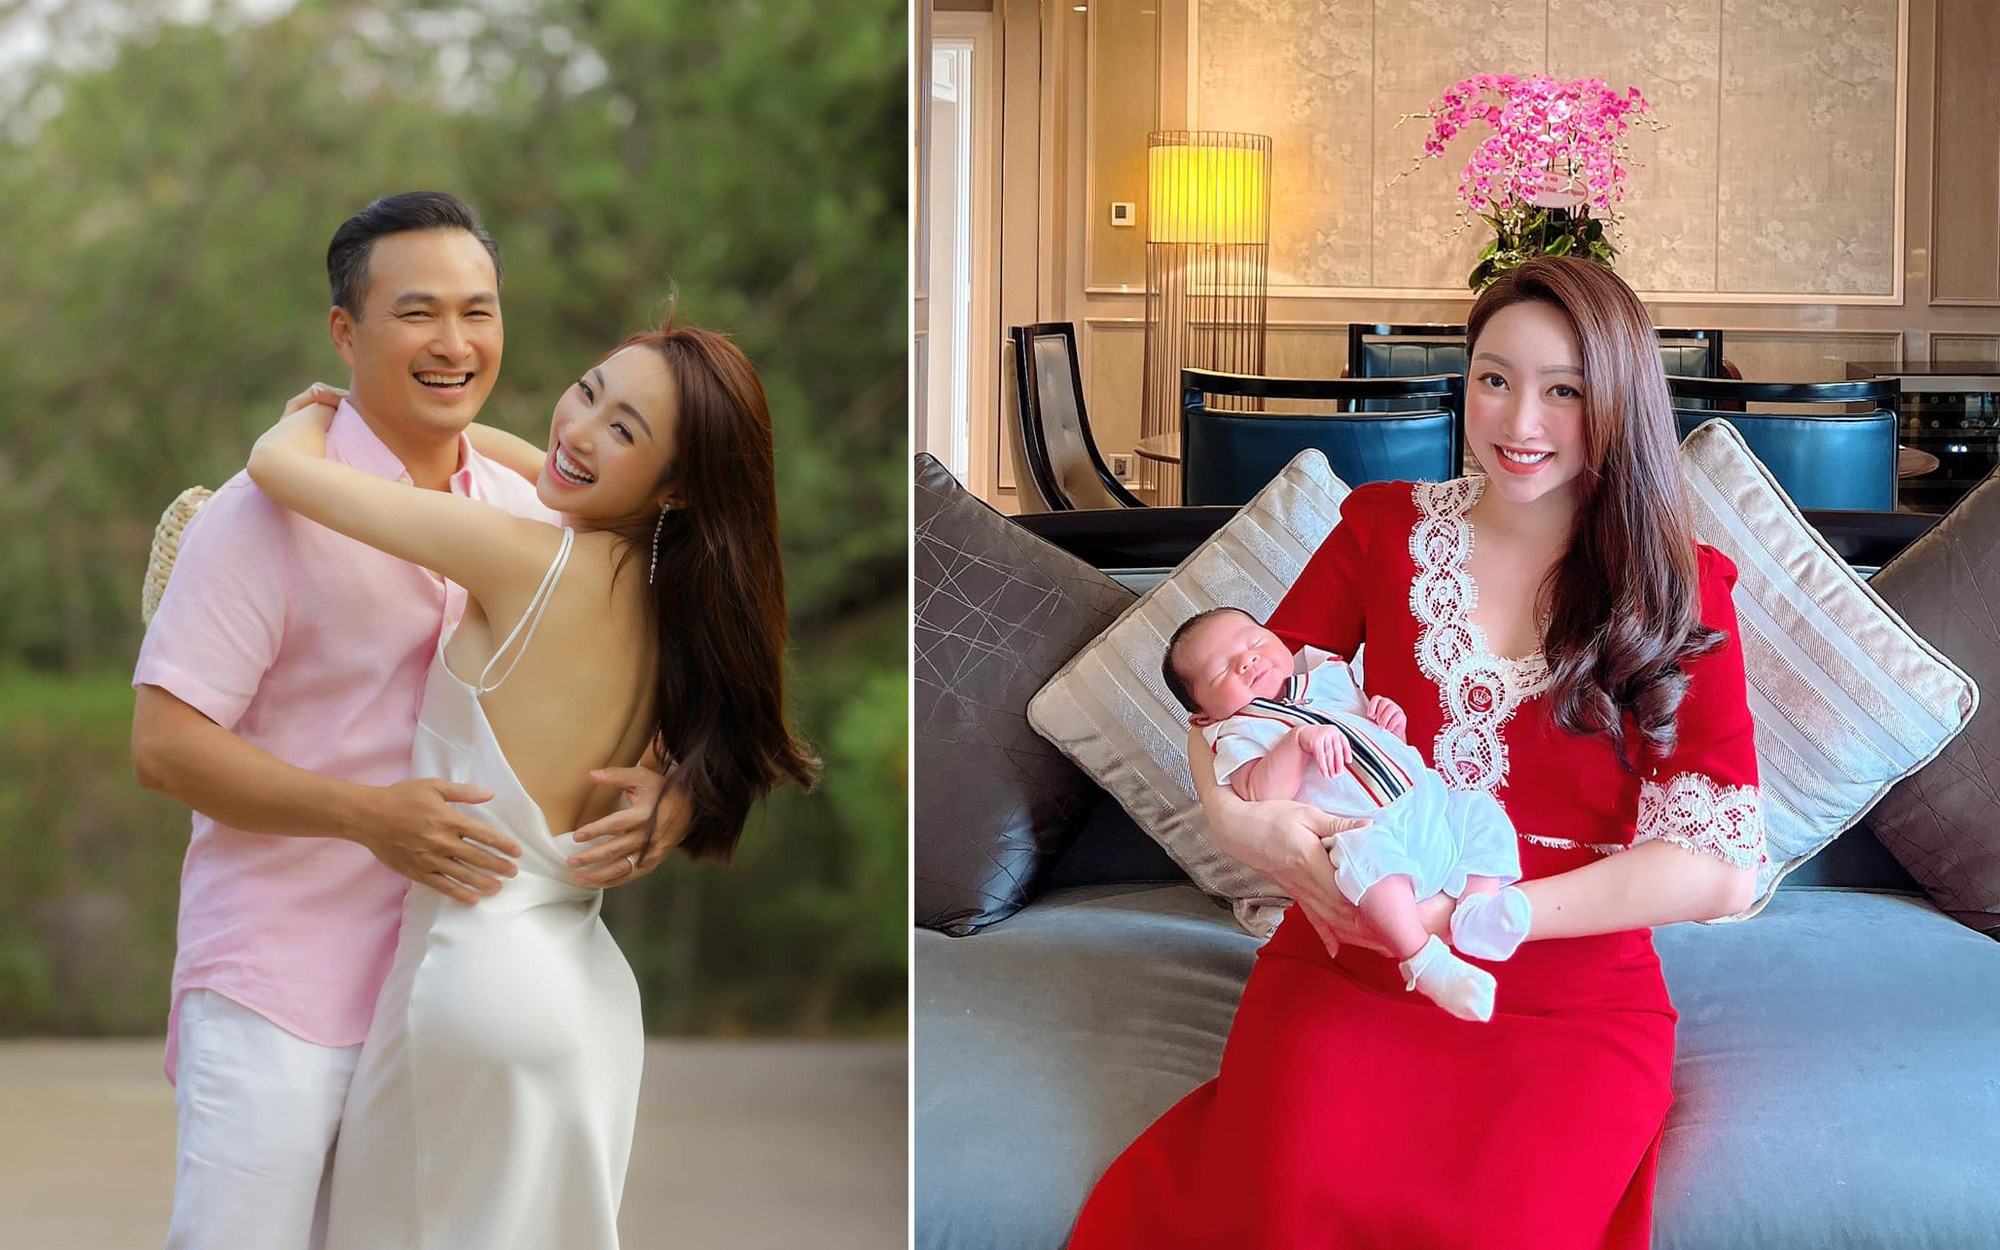 Mới sinh được 1 tuần, vợ Chi Bảo đã xuất hiện lộ nhan sắc "bà đẻ", kể về cuộc sống "ngáp ngáp, sợ quắn" rối ren